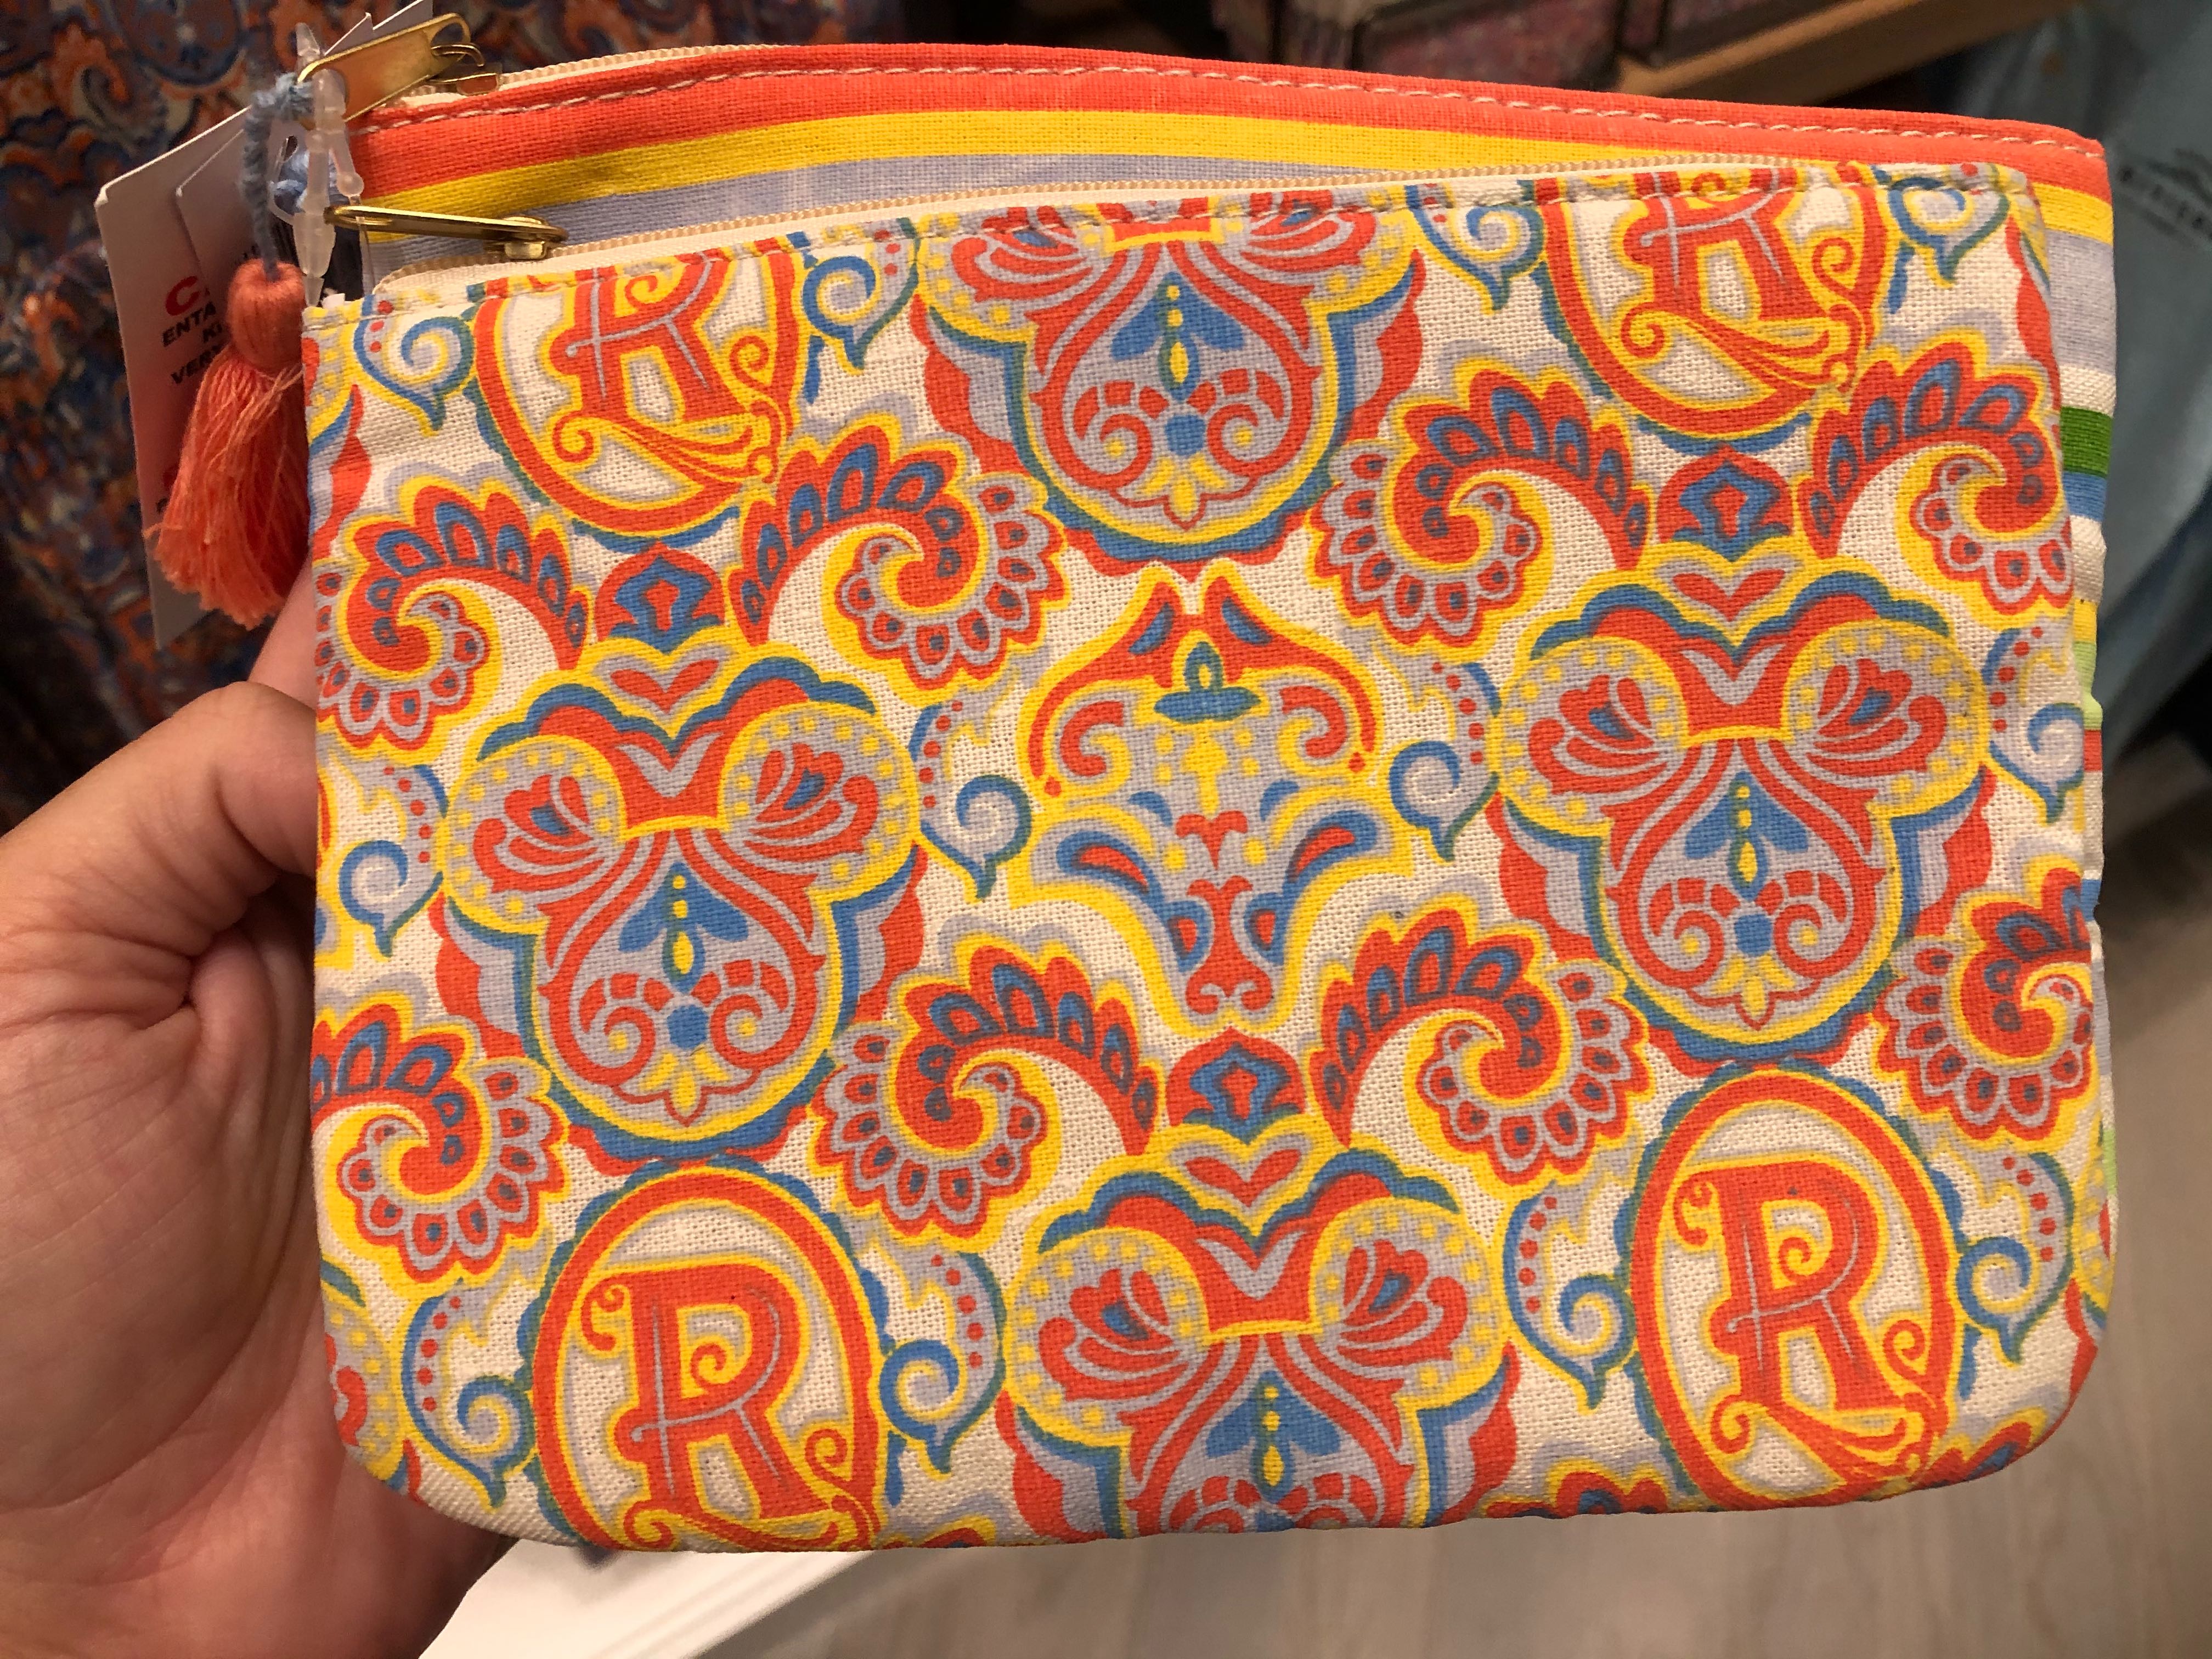 Riviera Resort 3 Bag Travel Kit - $44.99